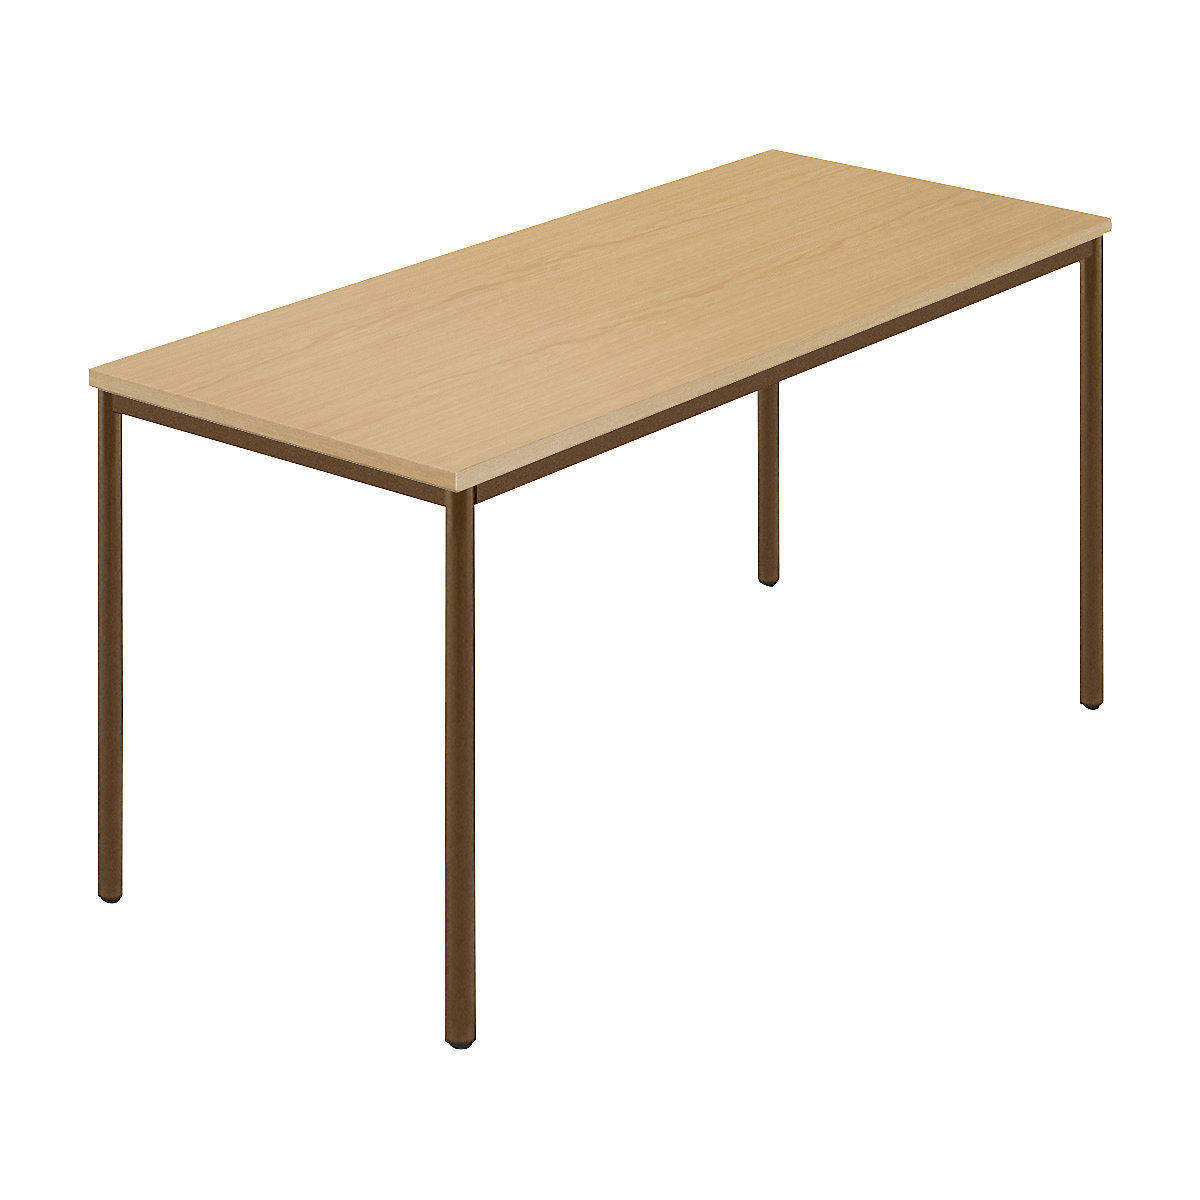 Pravokutni stol, presvučena okrugla cijev, ŠxD 1400 x 700 mm, prirodna bukva / u smeđoj boji-6